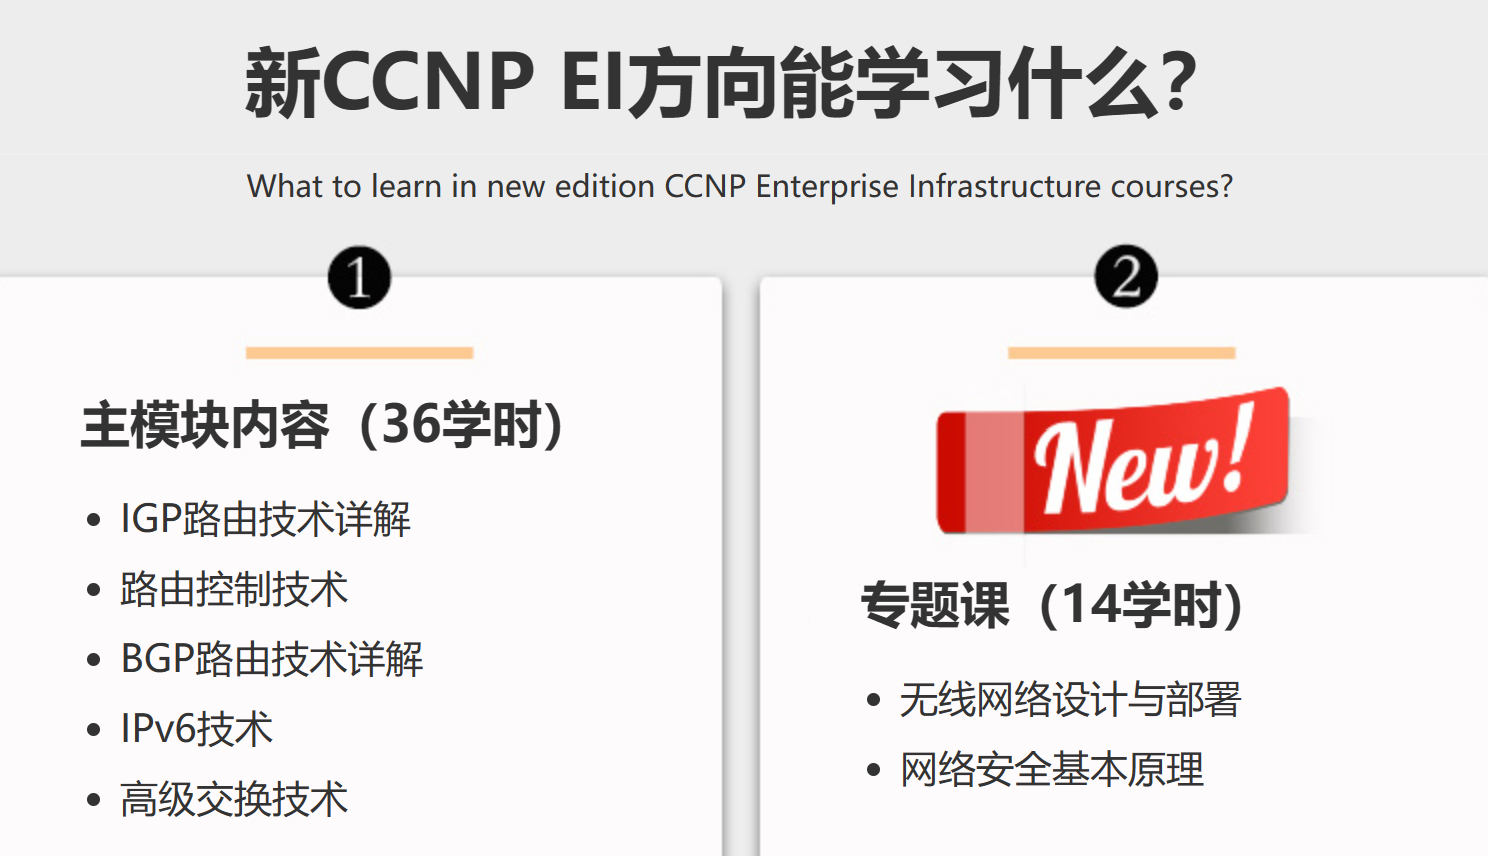 CCNP EI 思科认证网络高级工程师课程